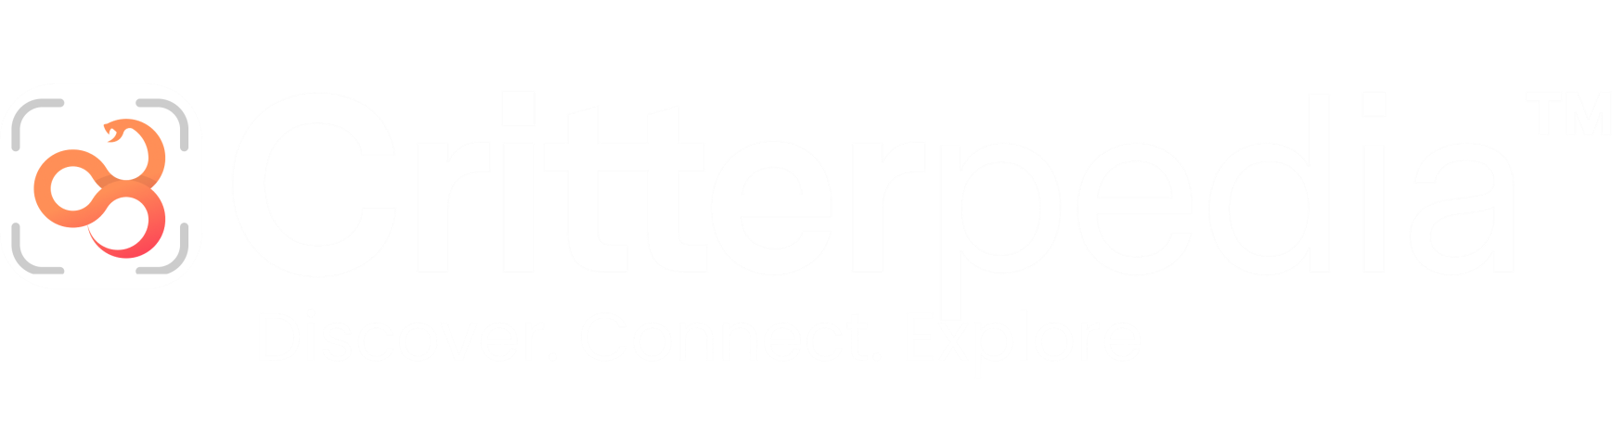 Critterpedia Logo and Tagline